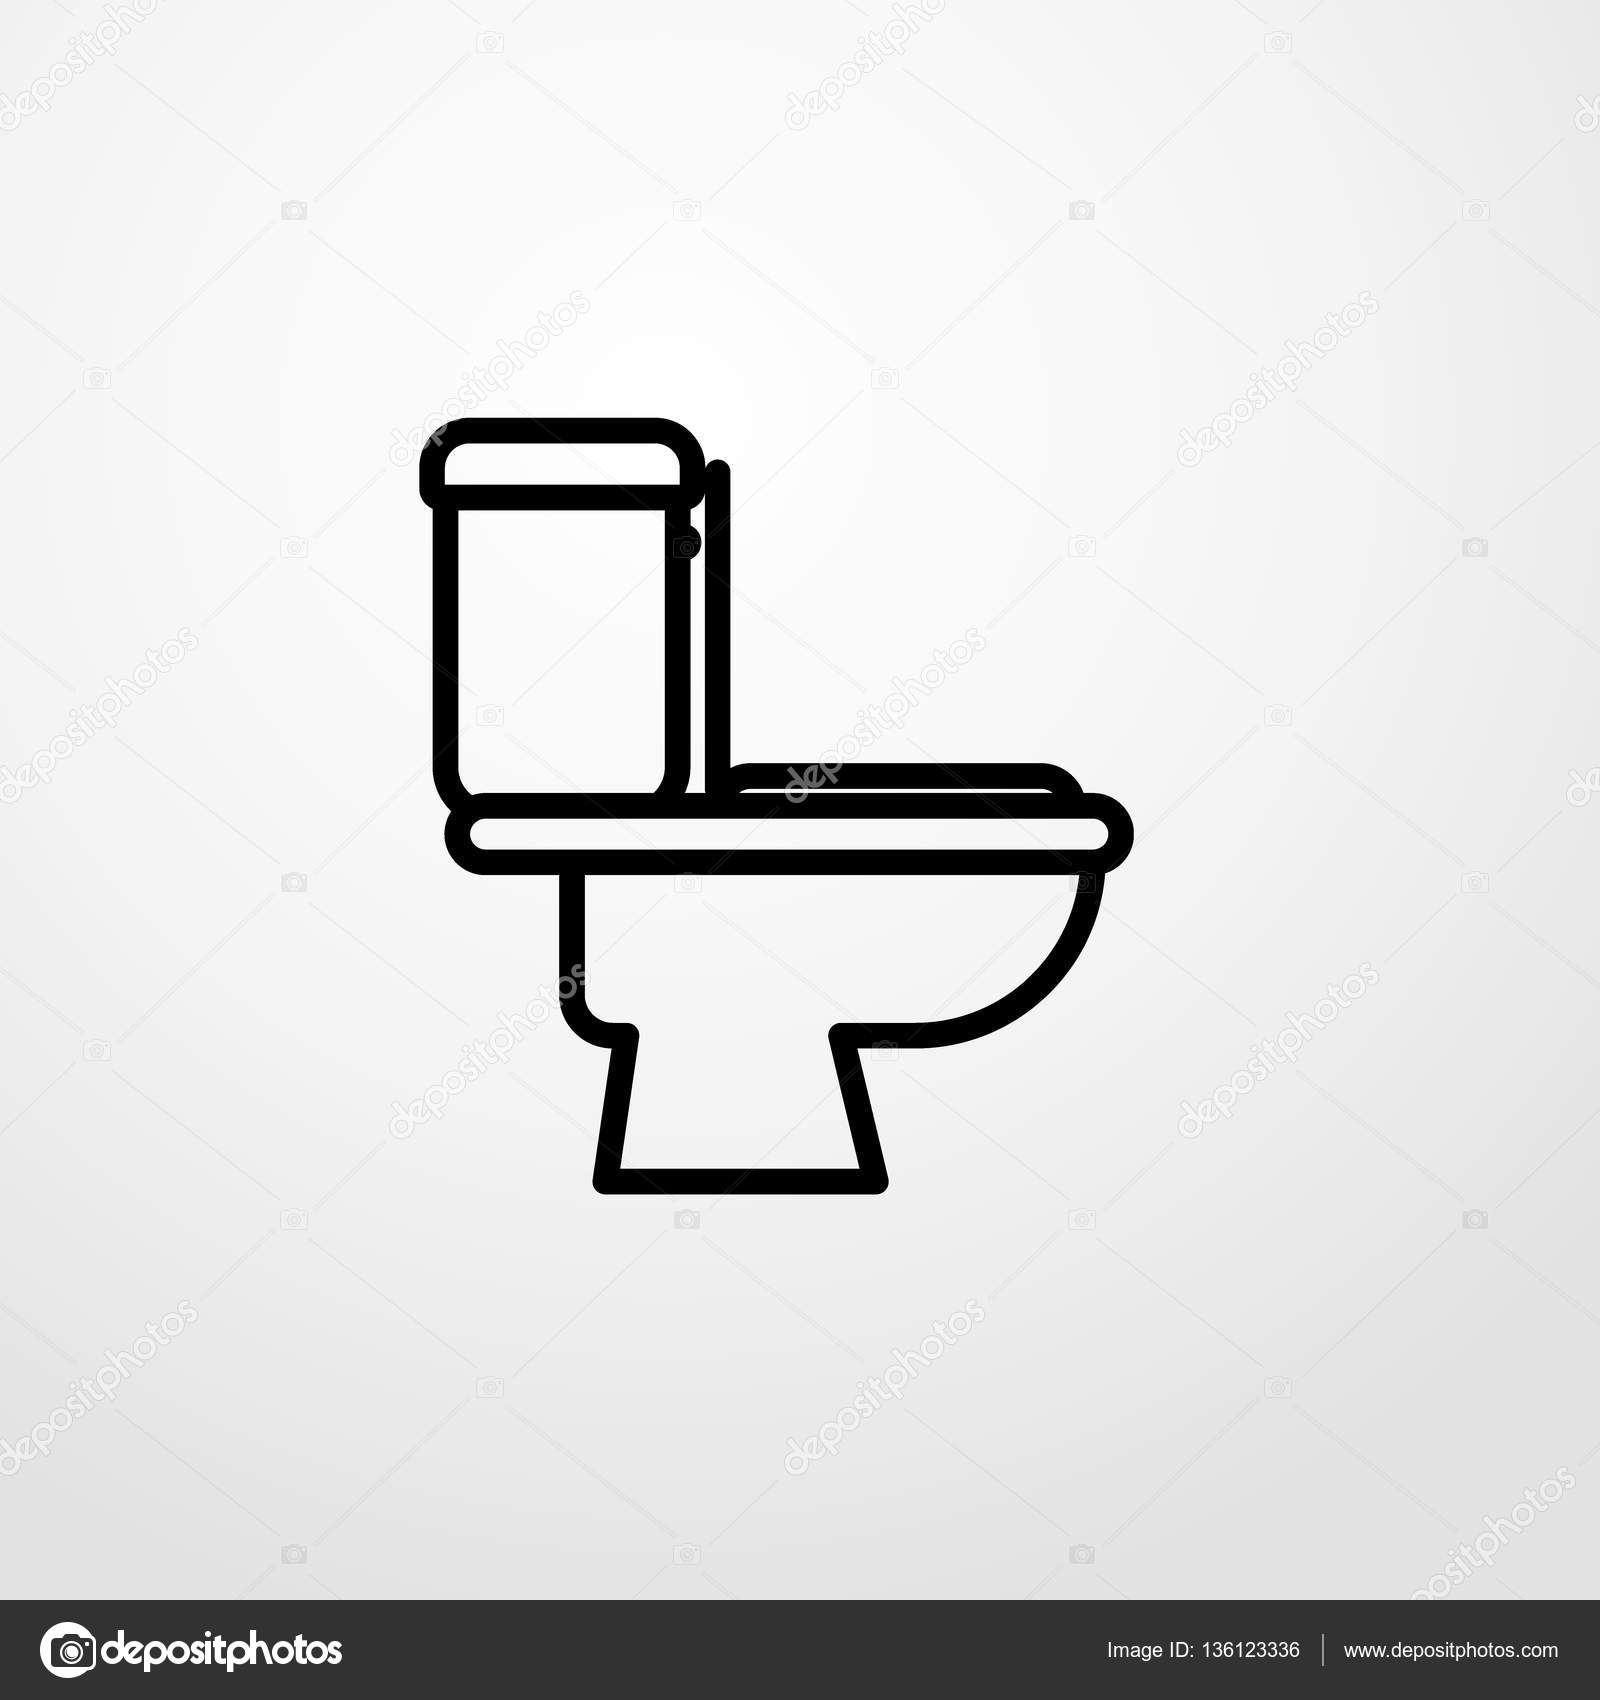  Toilette  lavabo ic ne Illustration vectorielle  Image 